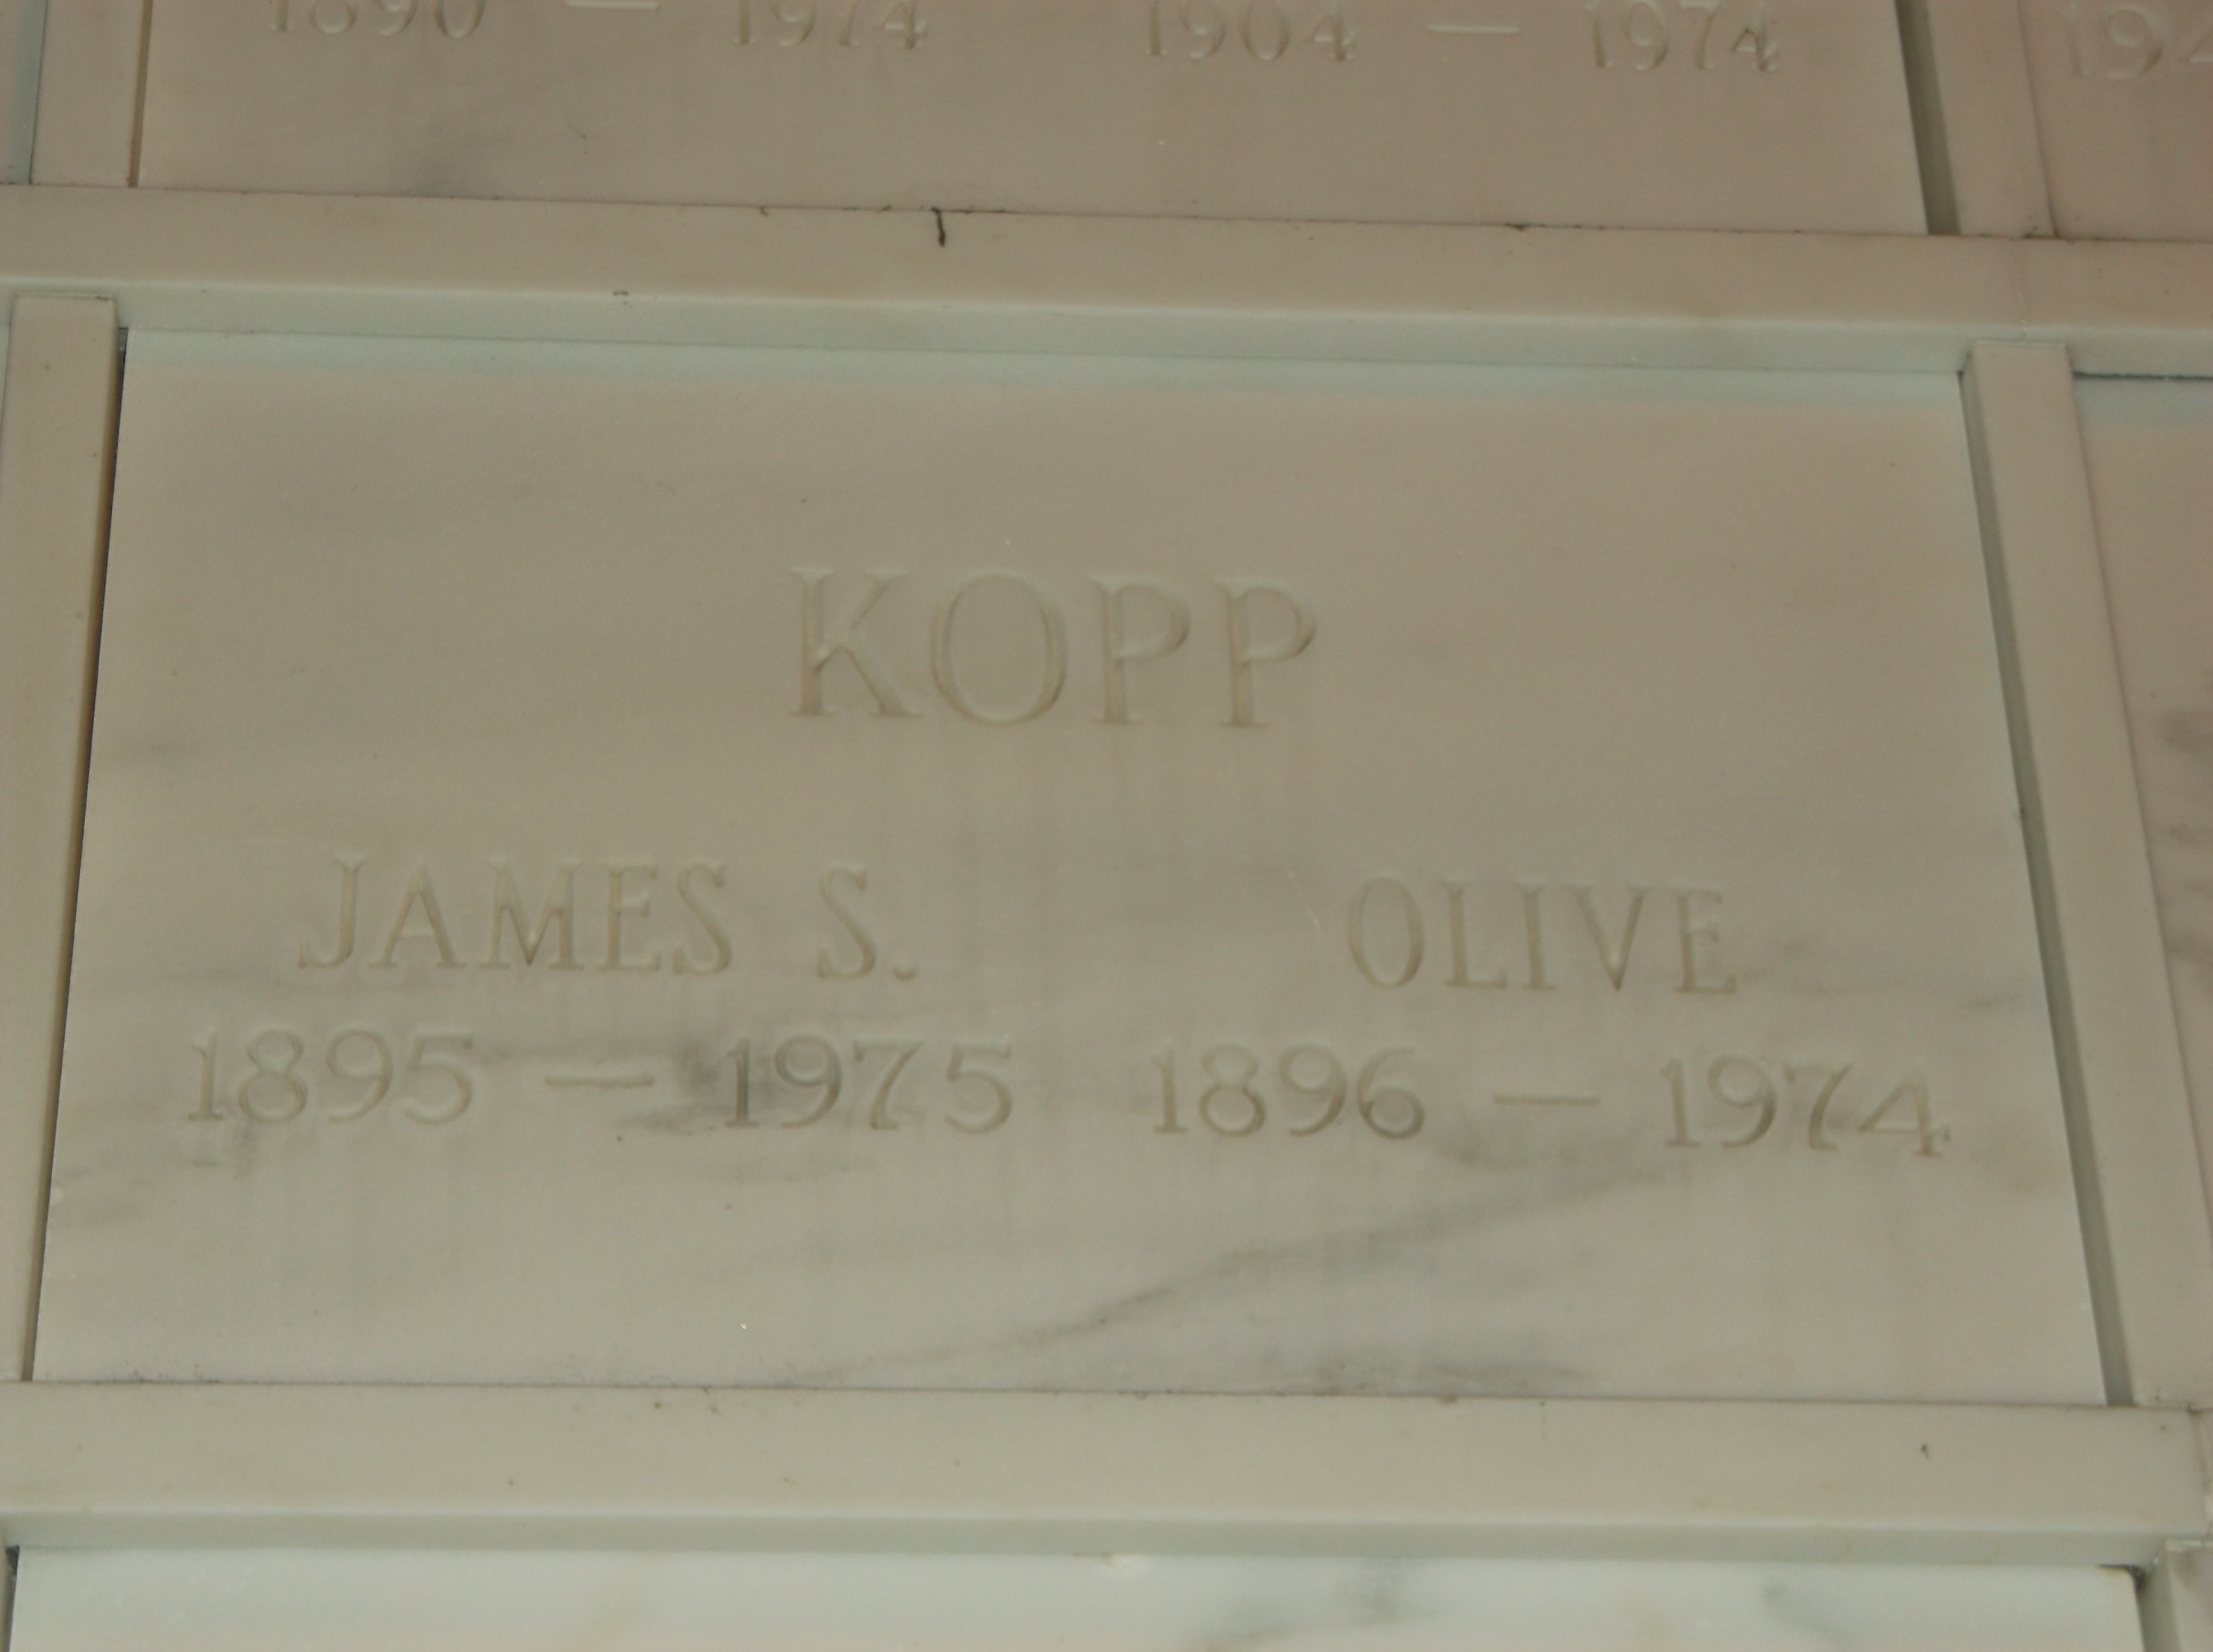 James S Kopp